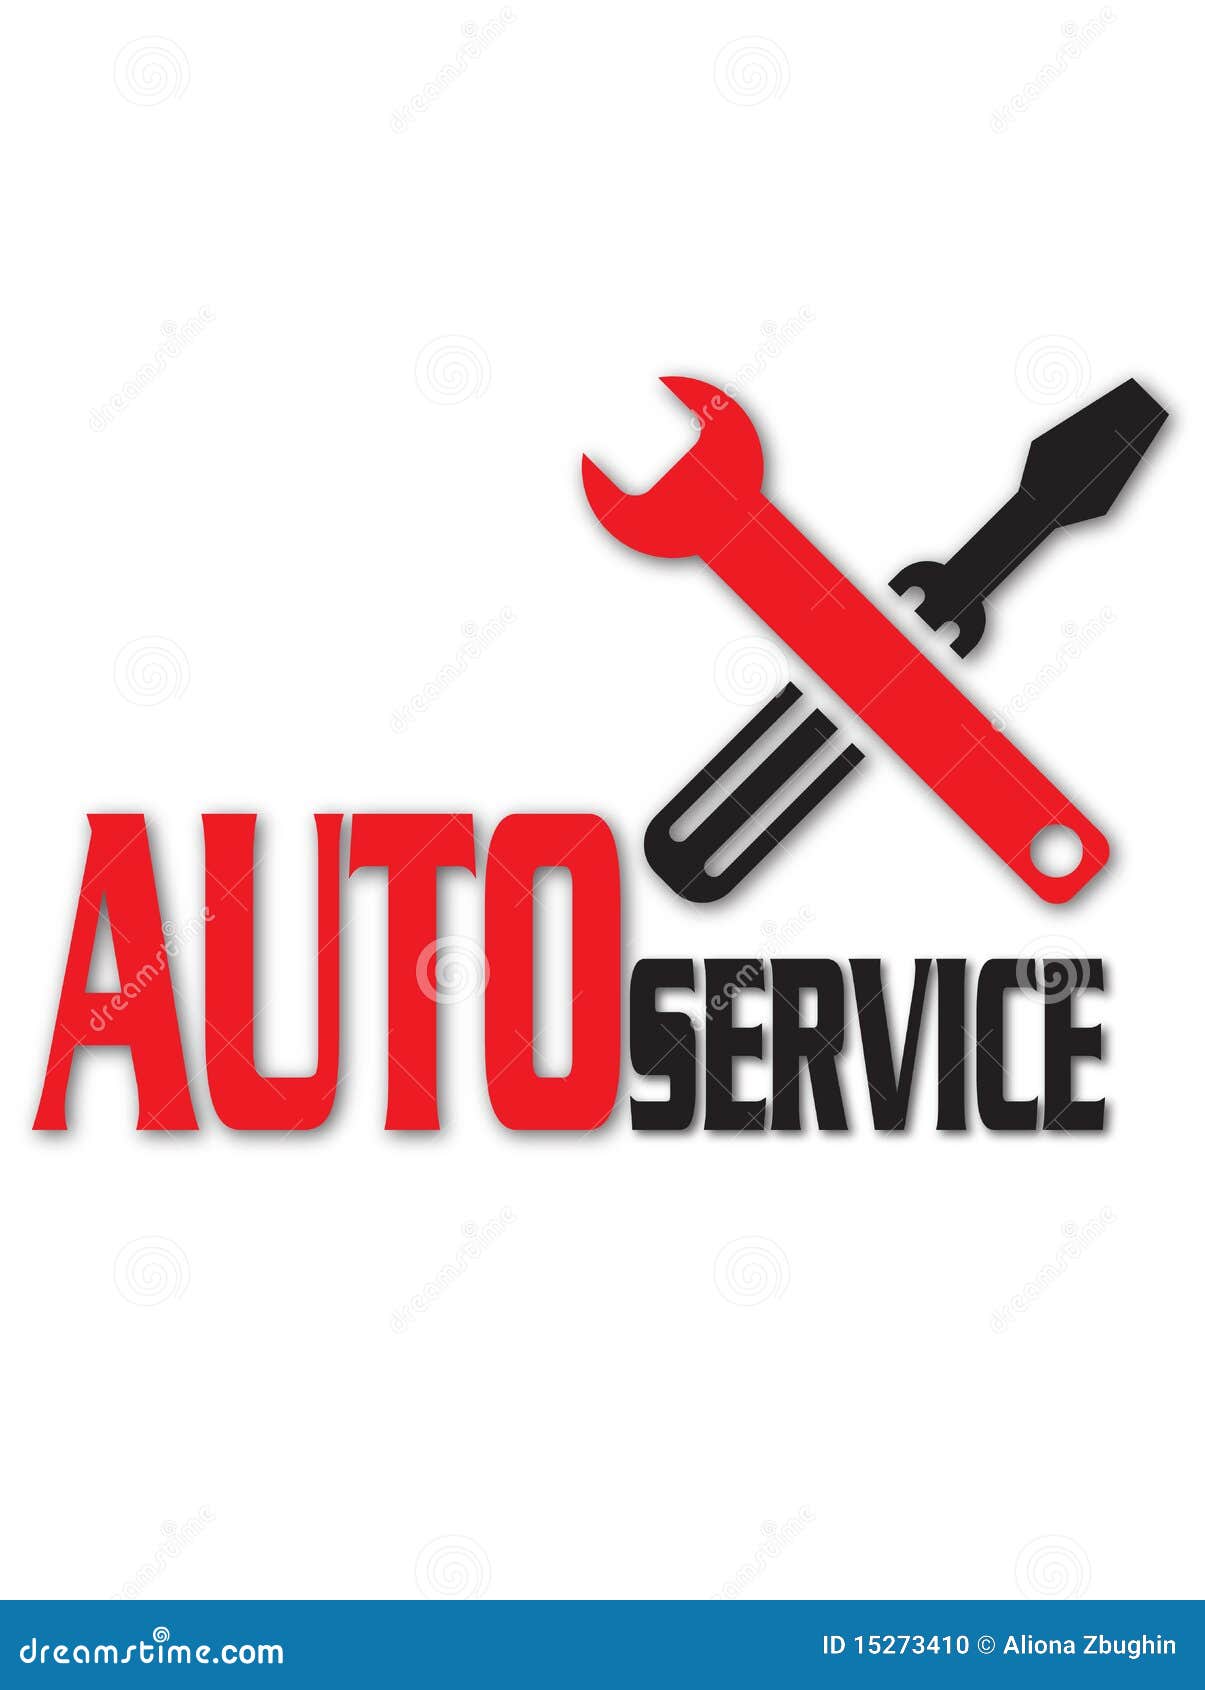 clipart auto service - photo #31